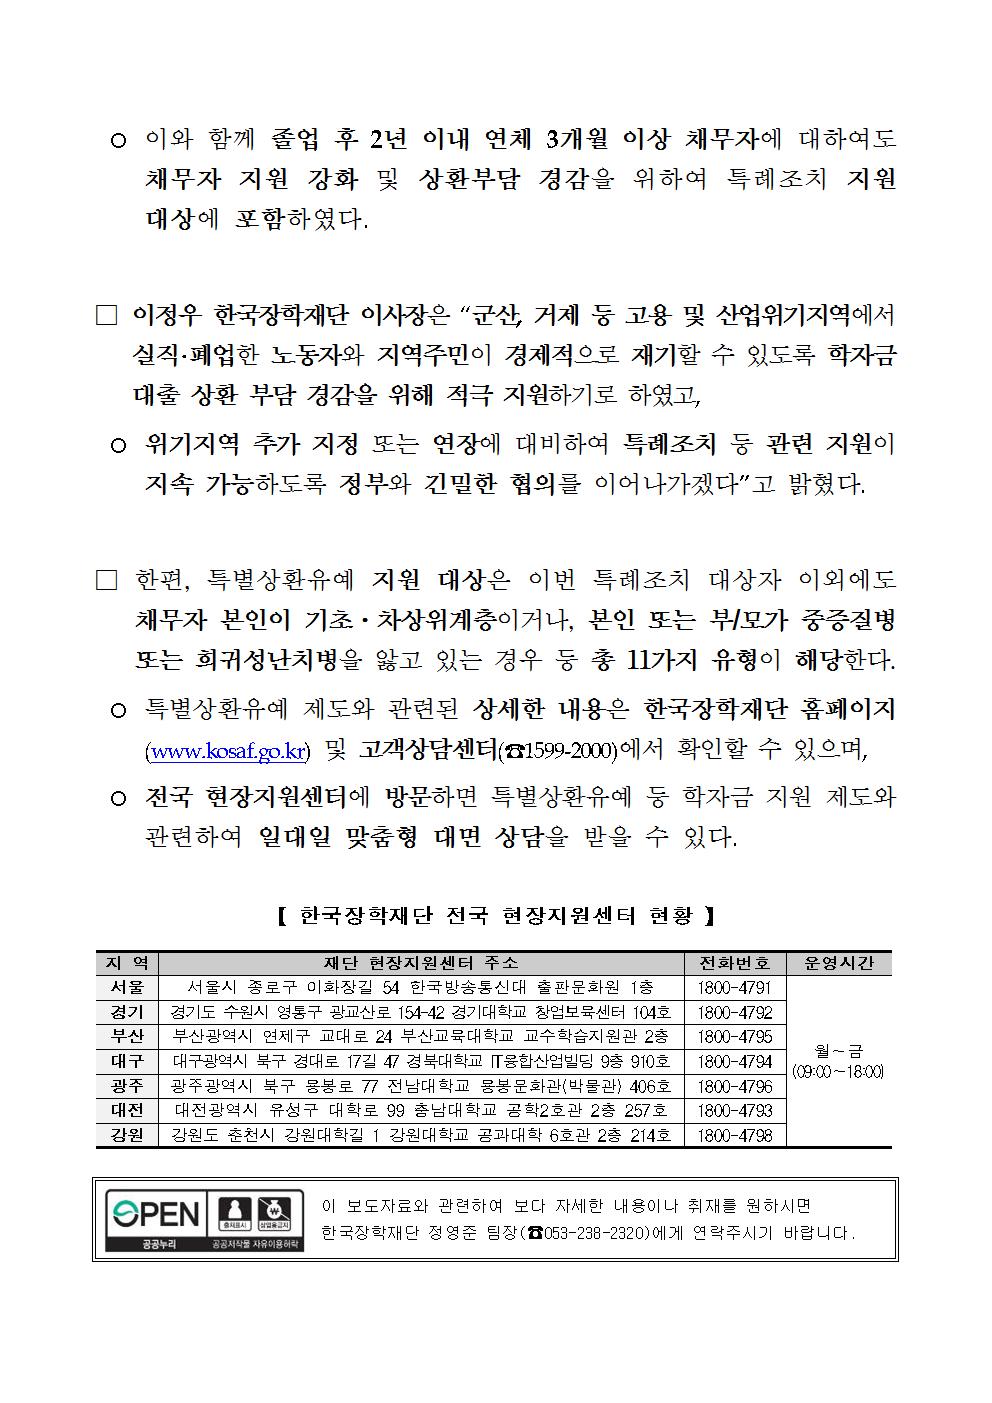 08-30(목)[보도자료] 한국장학재단, 2018년 일반상환학자금 특별상환유예 특례조치 시행002.jpg